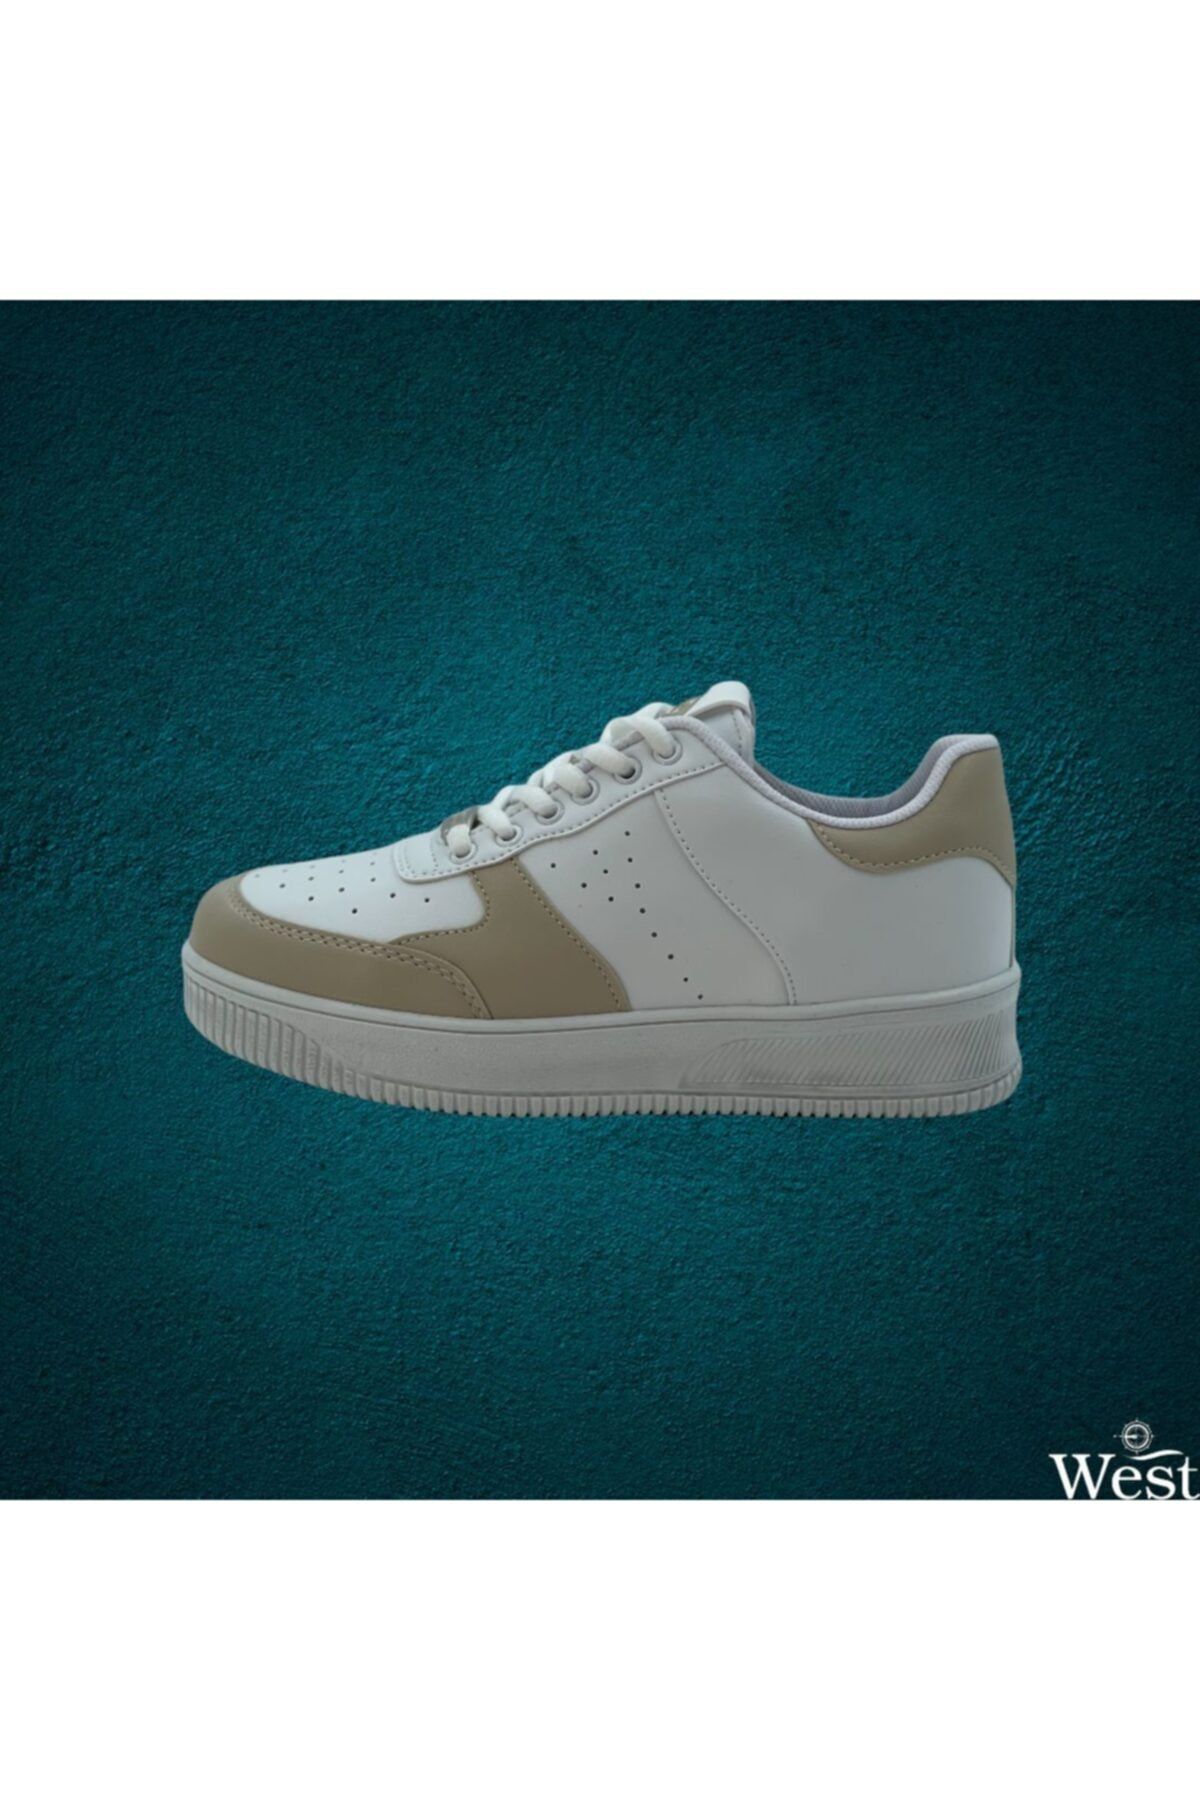 Dunlop Unisex Beyaz Bej Sneaker Günlük Spor Ayakkabı Dnp-1888 0222